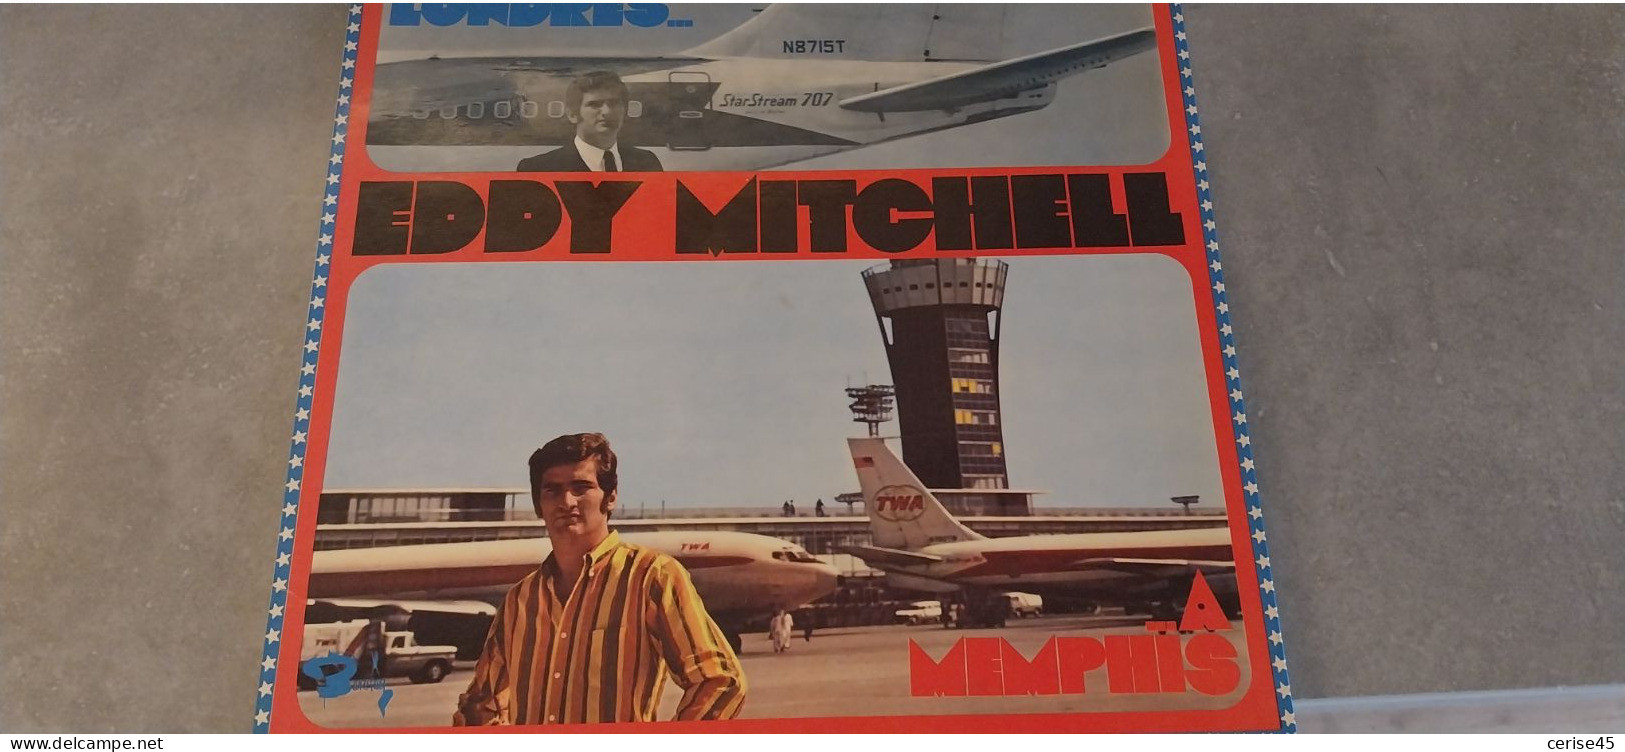 33 TOURS EDDY MITCHELL DE LONDRES A MENPHIS  ENREGISTRE EN 1967 - Sonstige - Franz. Chansons